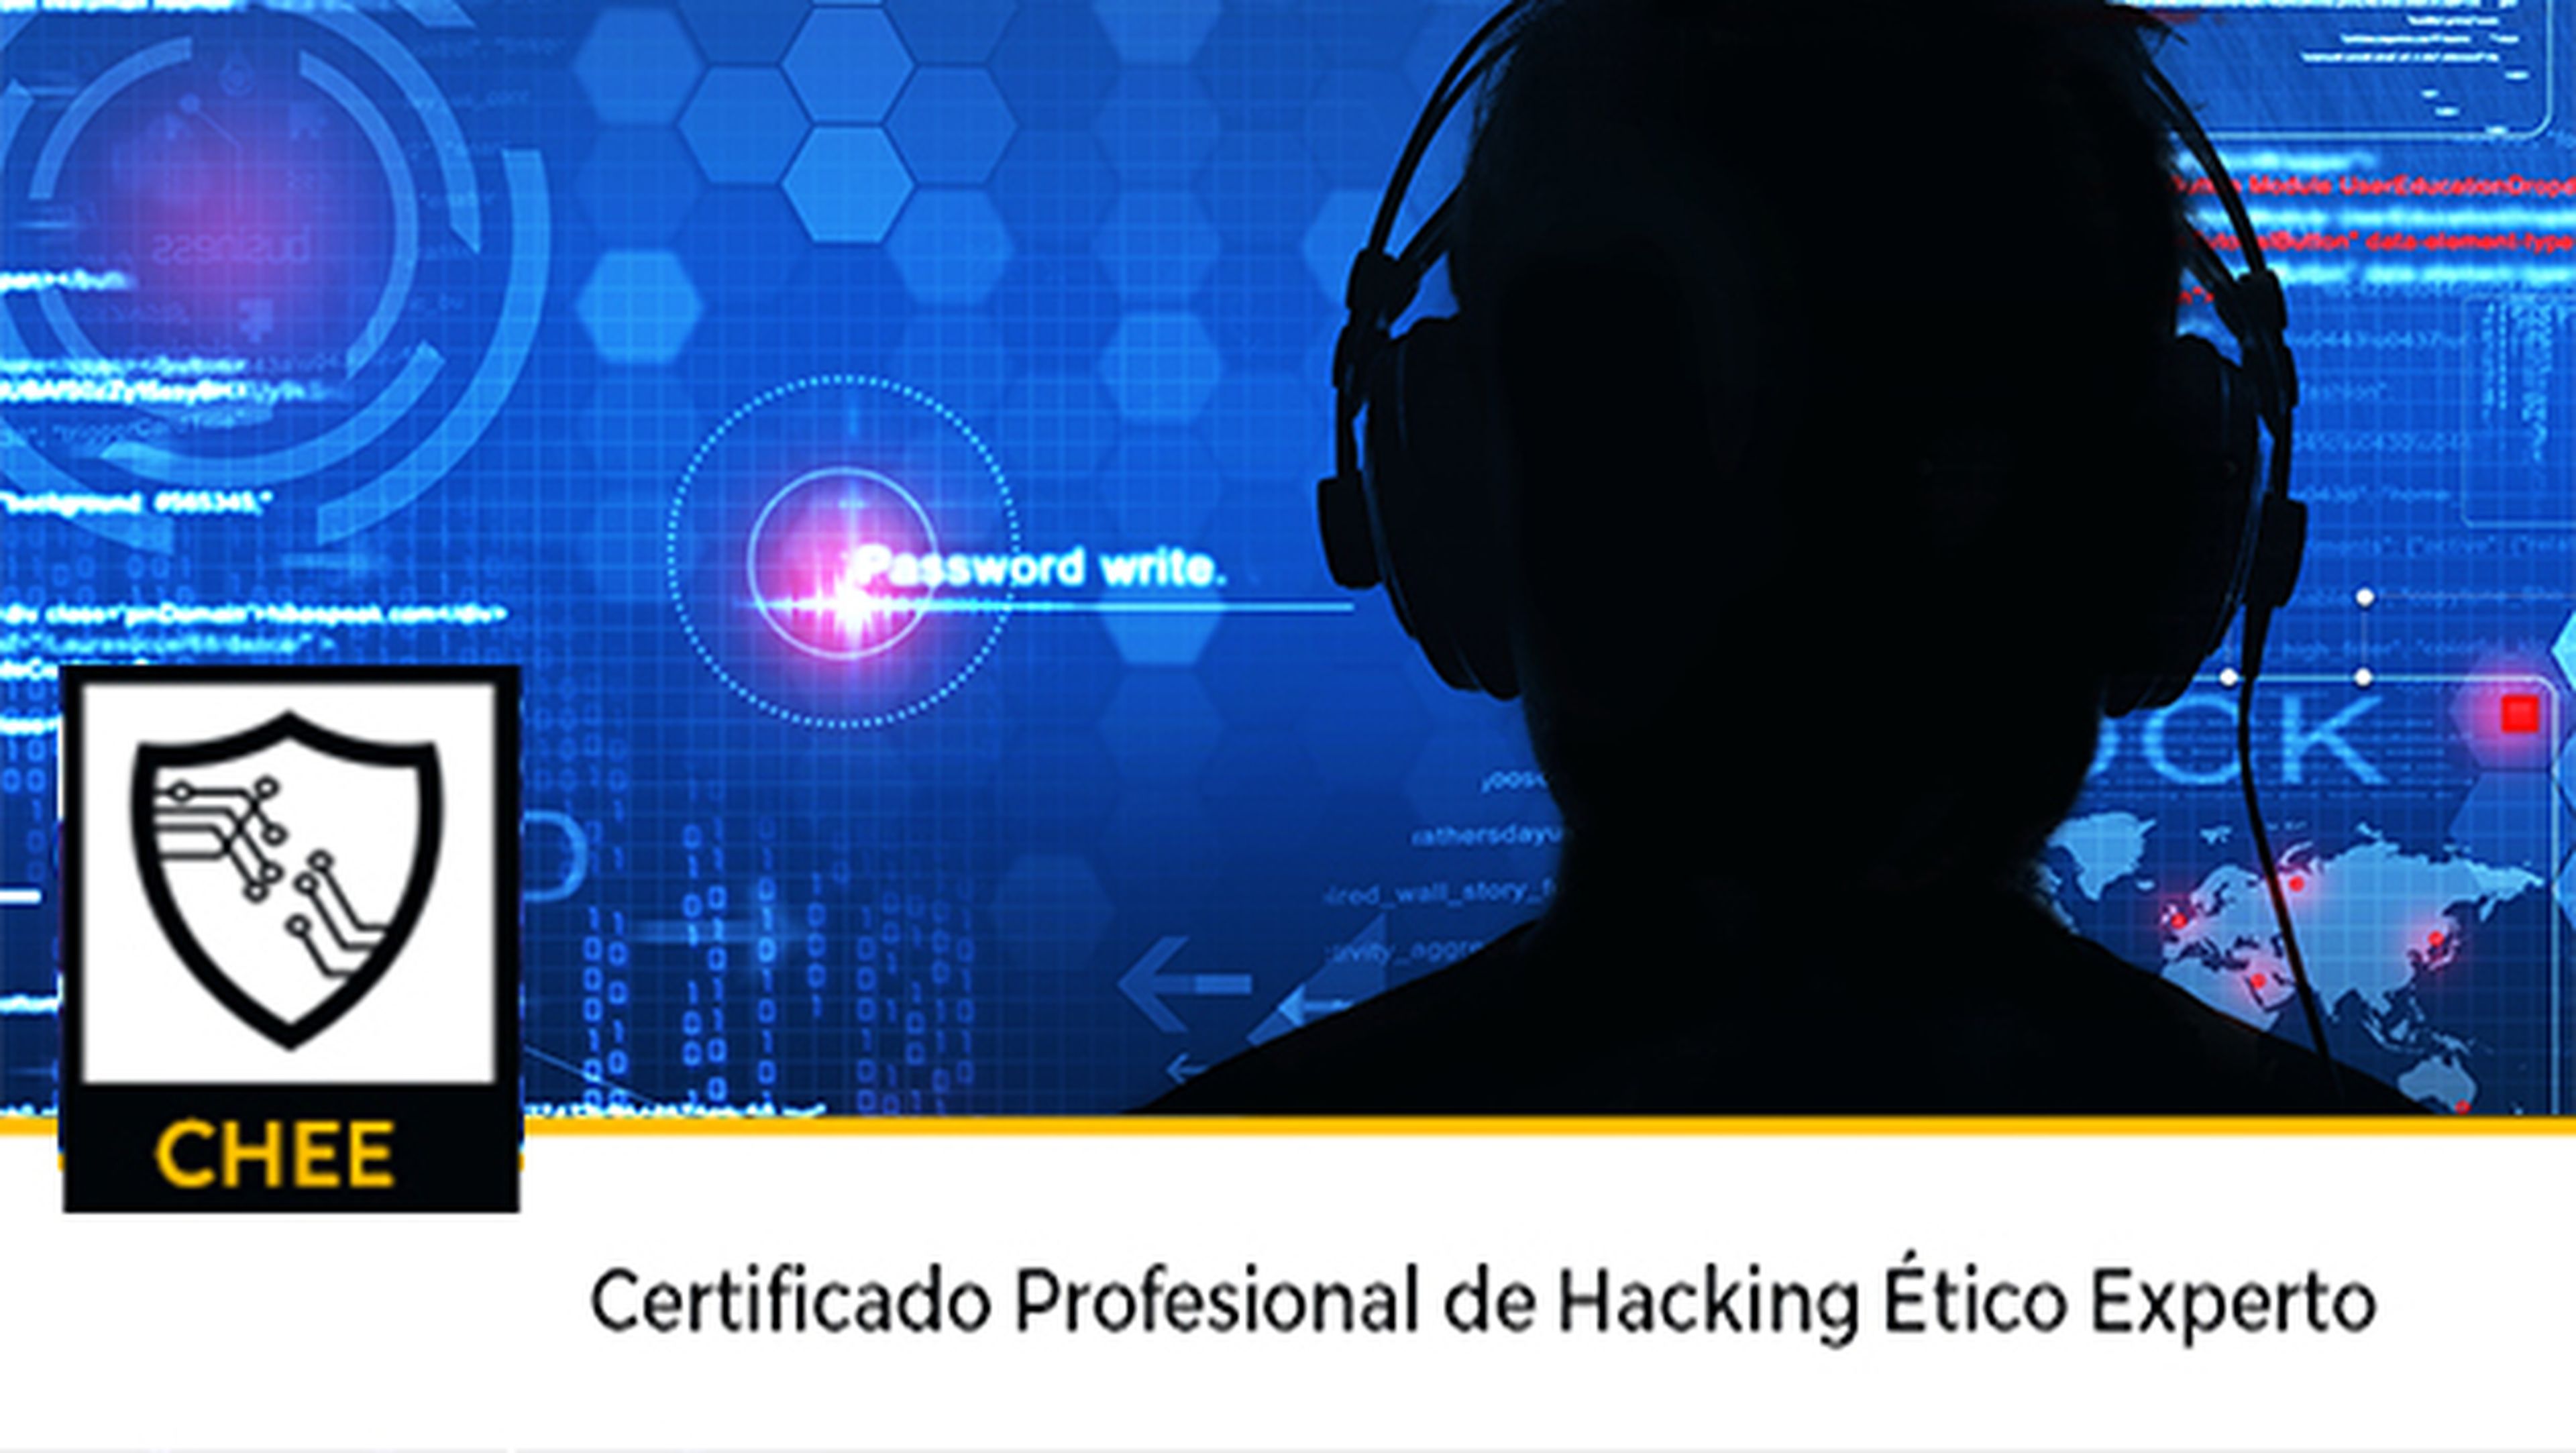 Obtén tu Certificado Profesional de Hacking Ético Experto